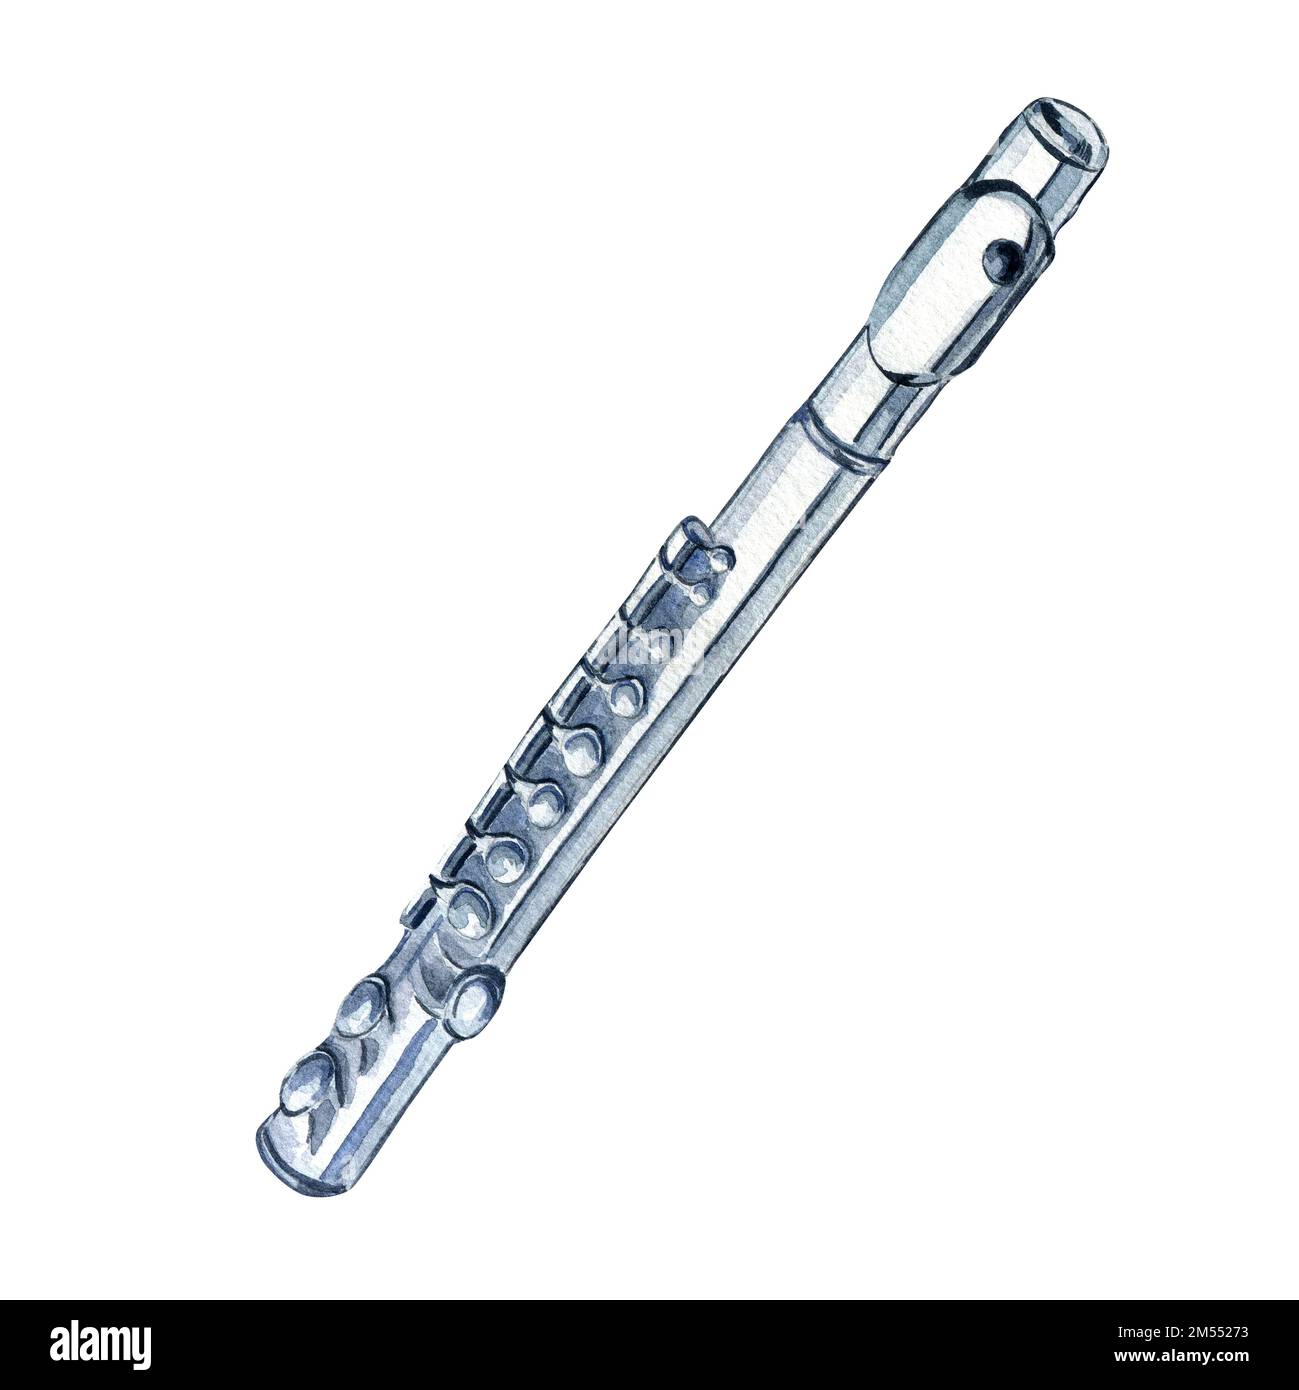 Illustration aquarelle d'instrument de musique à vent clarinette sur fond blanc. Orchestre symphonique Piccolo instrument de bois dessiné à la main. Elément pour d Banque D'Images